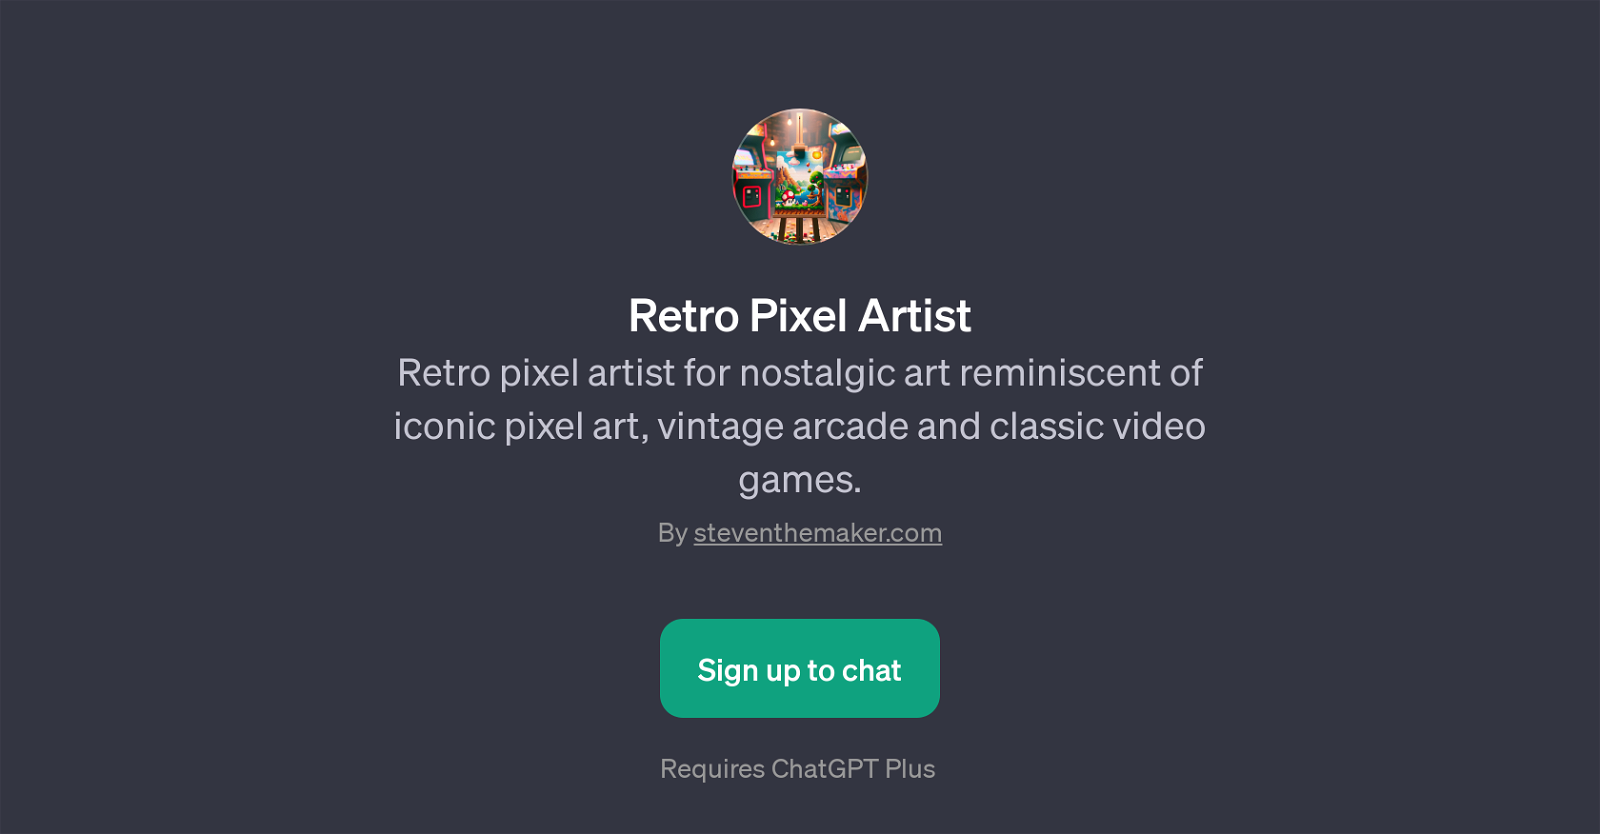 Retro Pixel Artist website